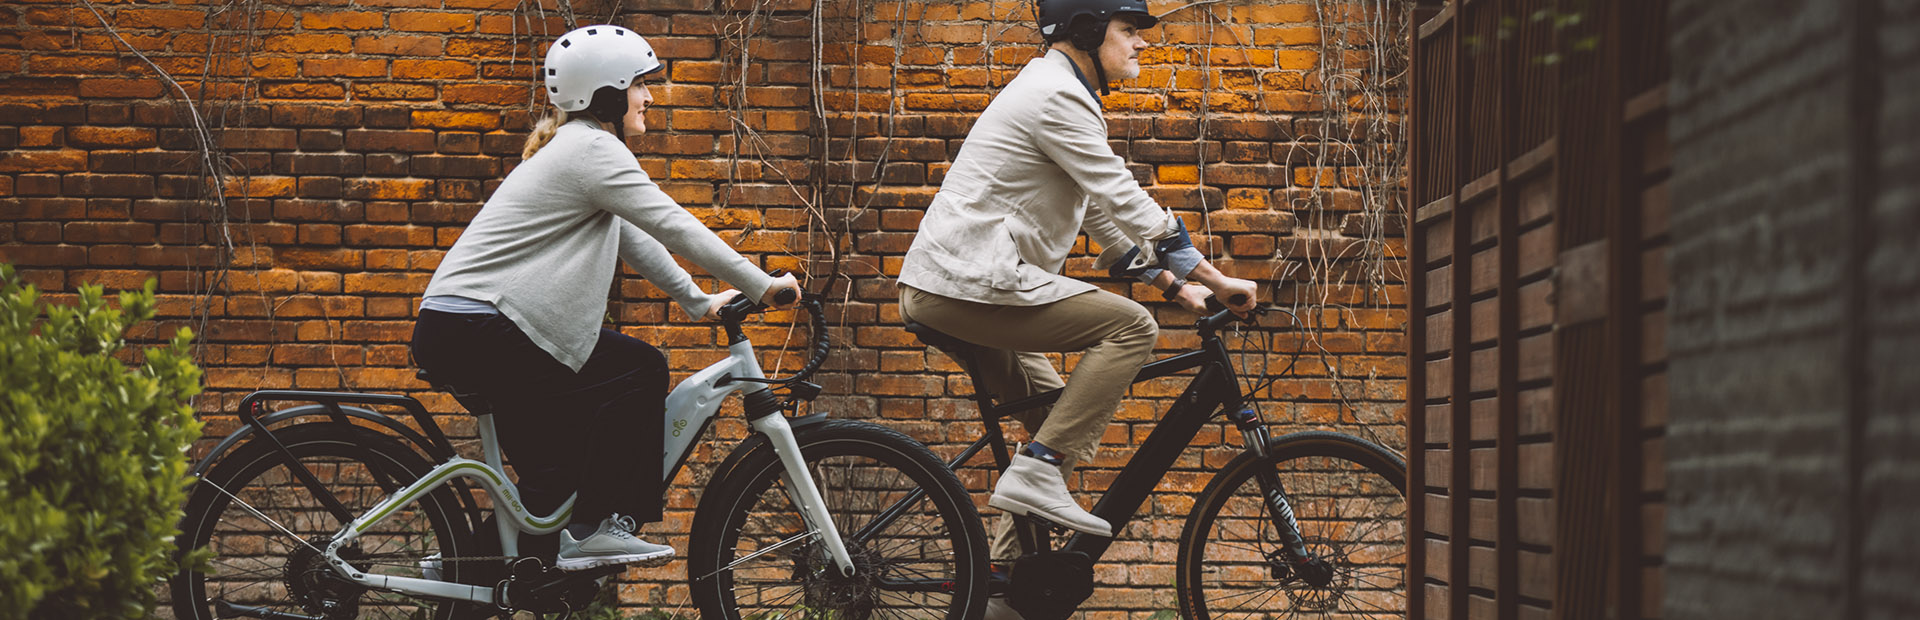 Urbanite Series
ePowered for City Bike